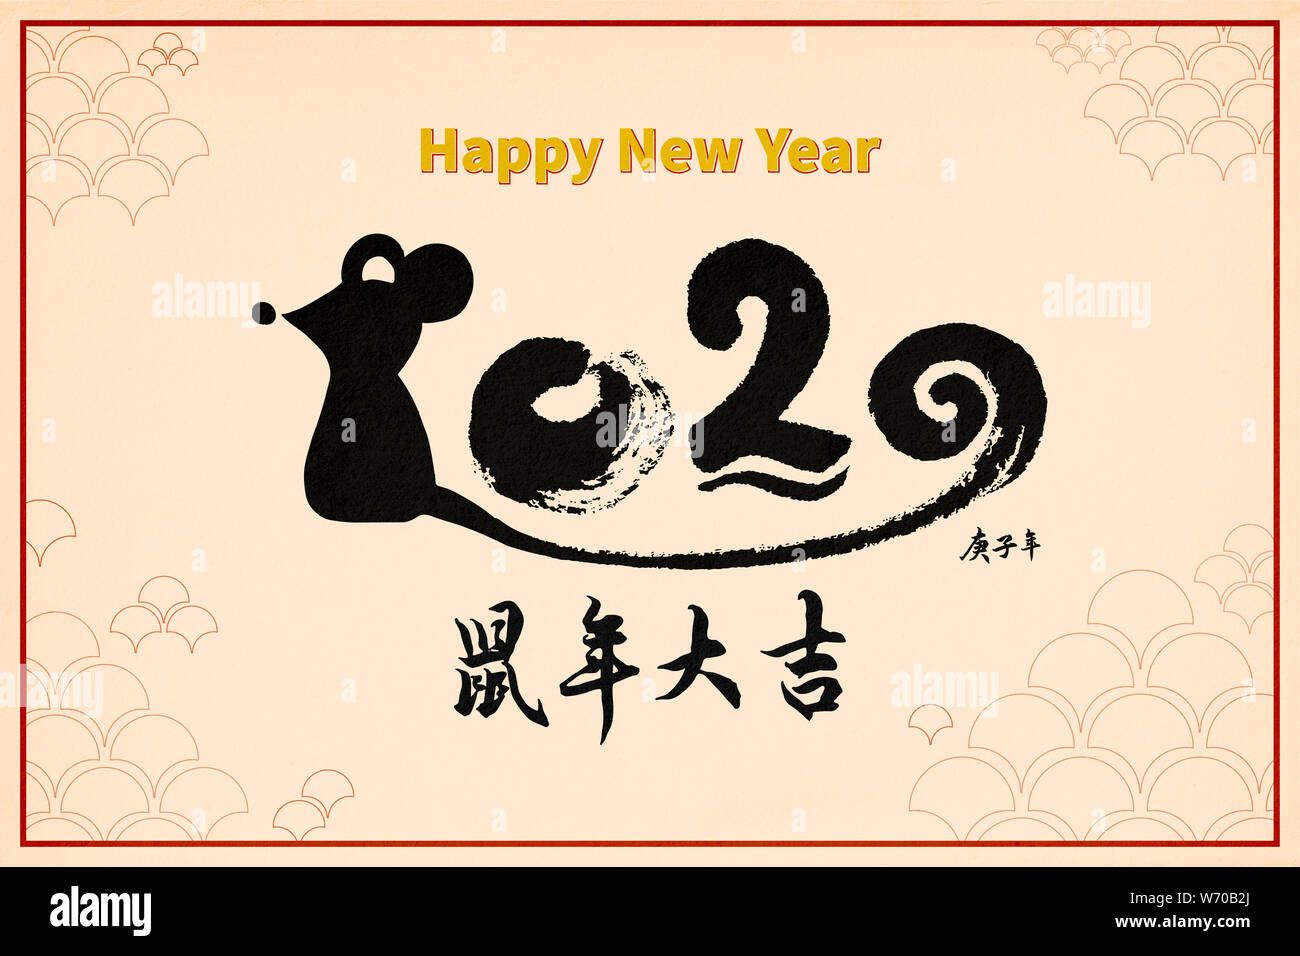 Le nouvel an chinois 2020 année du rat , éléments asiatiques (style traduction chinoise : heureux nouvel an chinois 2020, l'année de rat) Banque D'Images